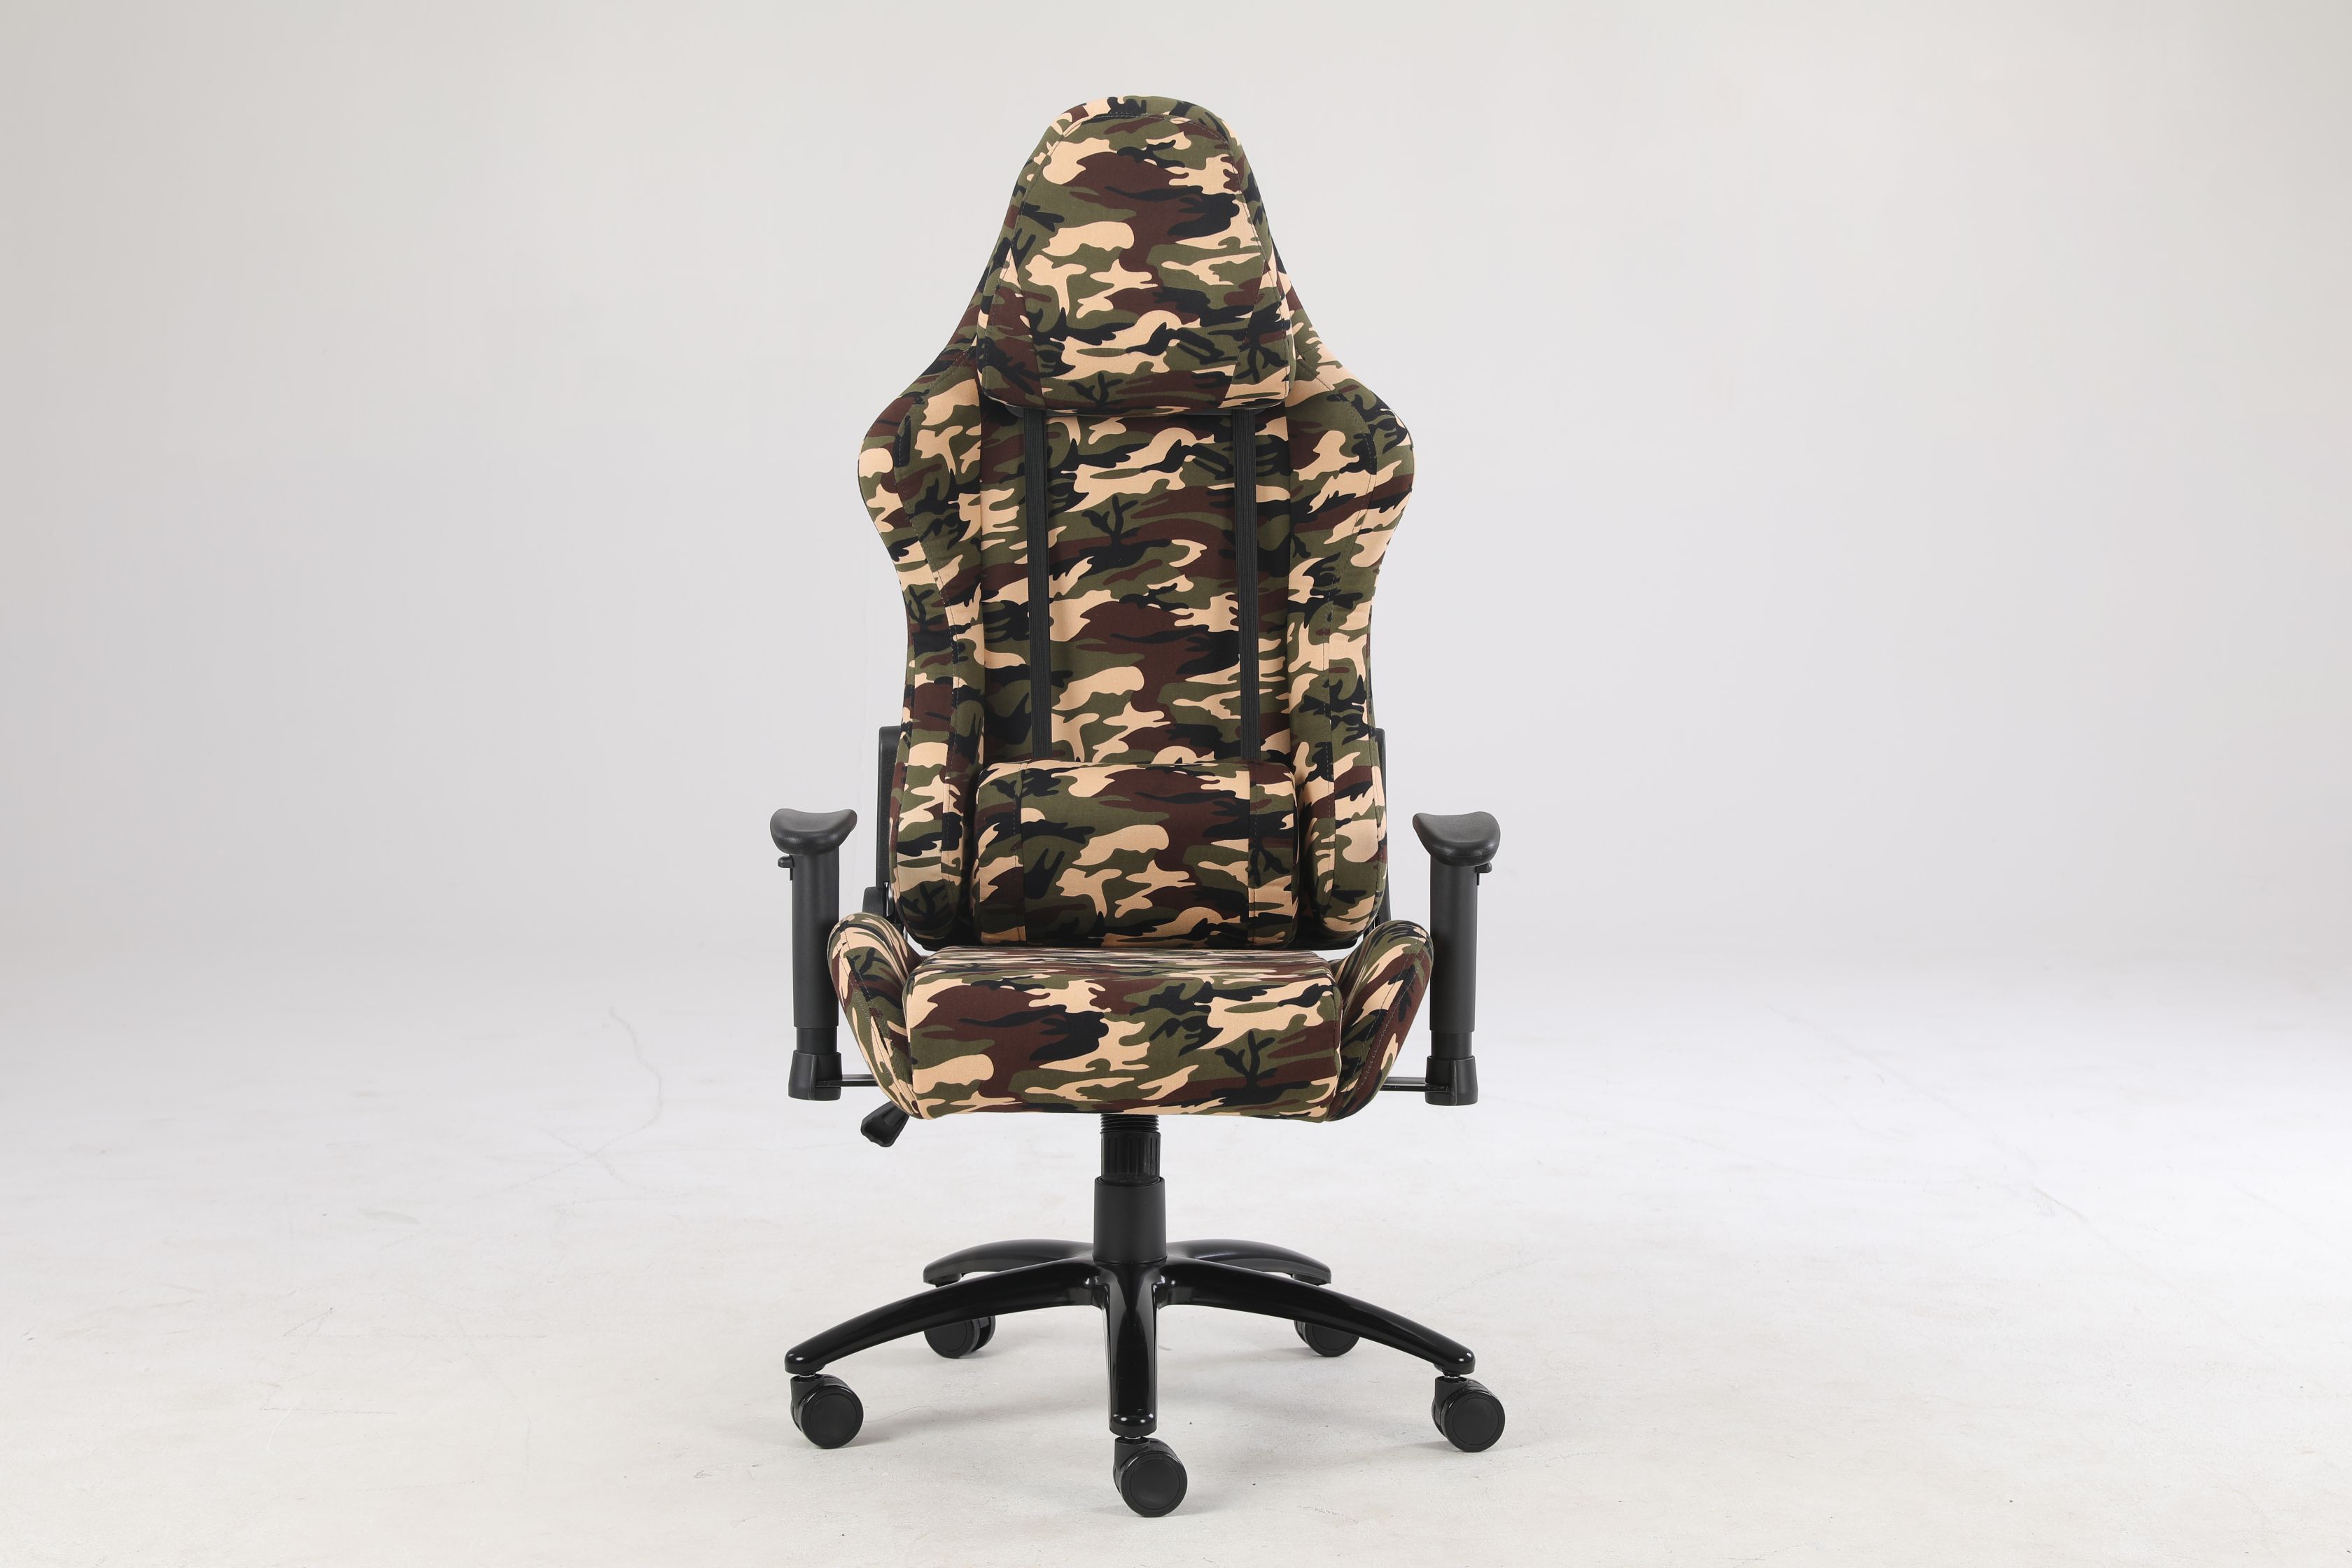 ARGO Soldier Gaming Chair